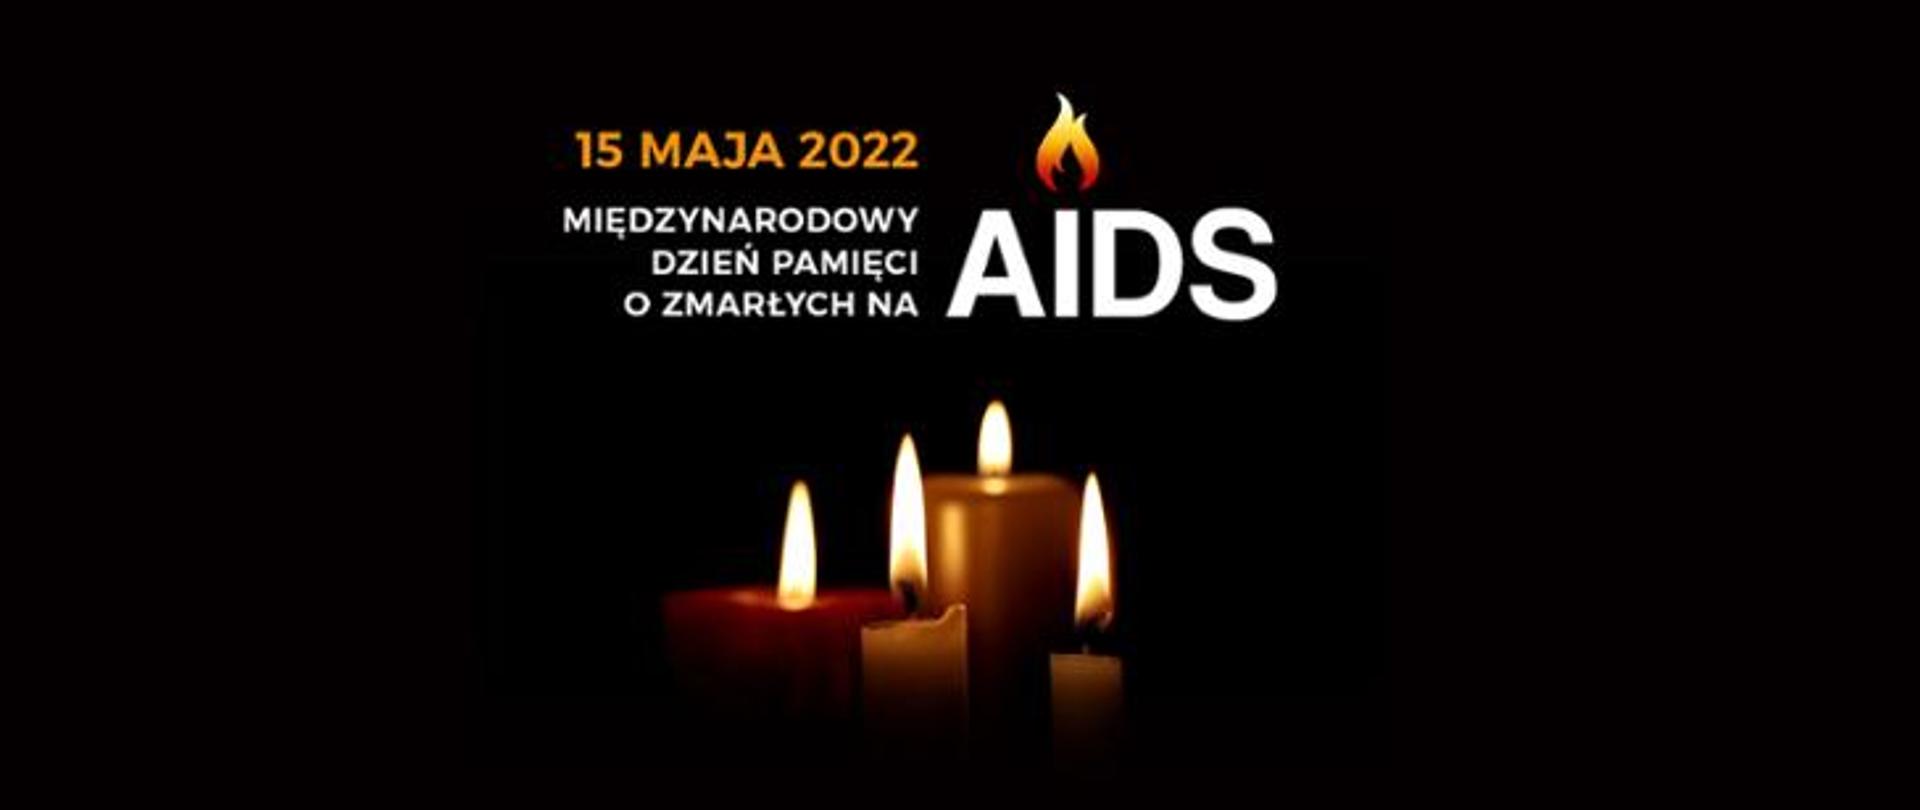 Obraz z tekstem 15 maja 2022 Międzynarodowy Dzień Pamięci o Zmarłych na AIDS, na czarnym tle zapalone cztery świeczki